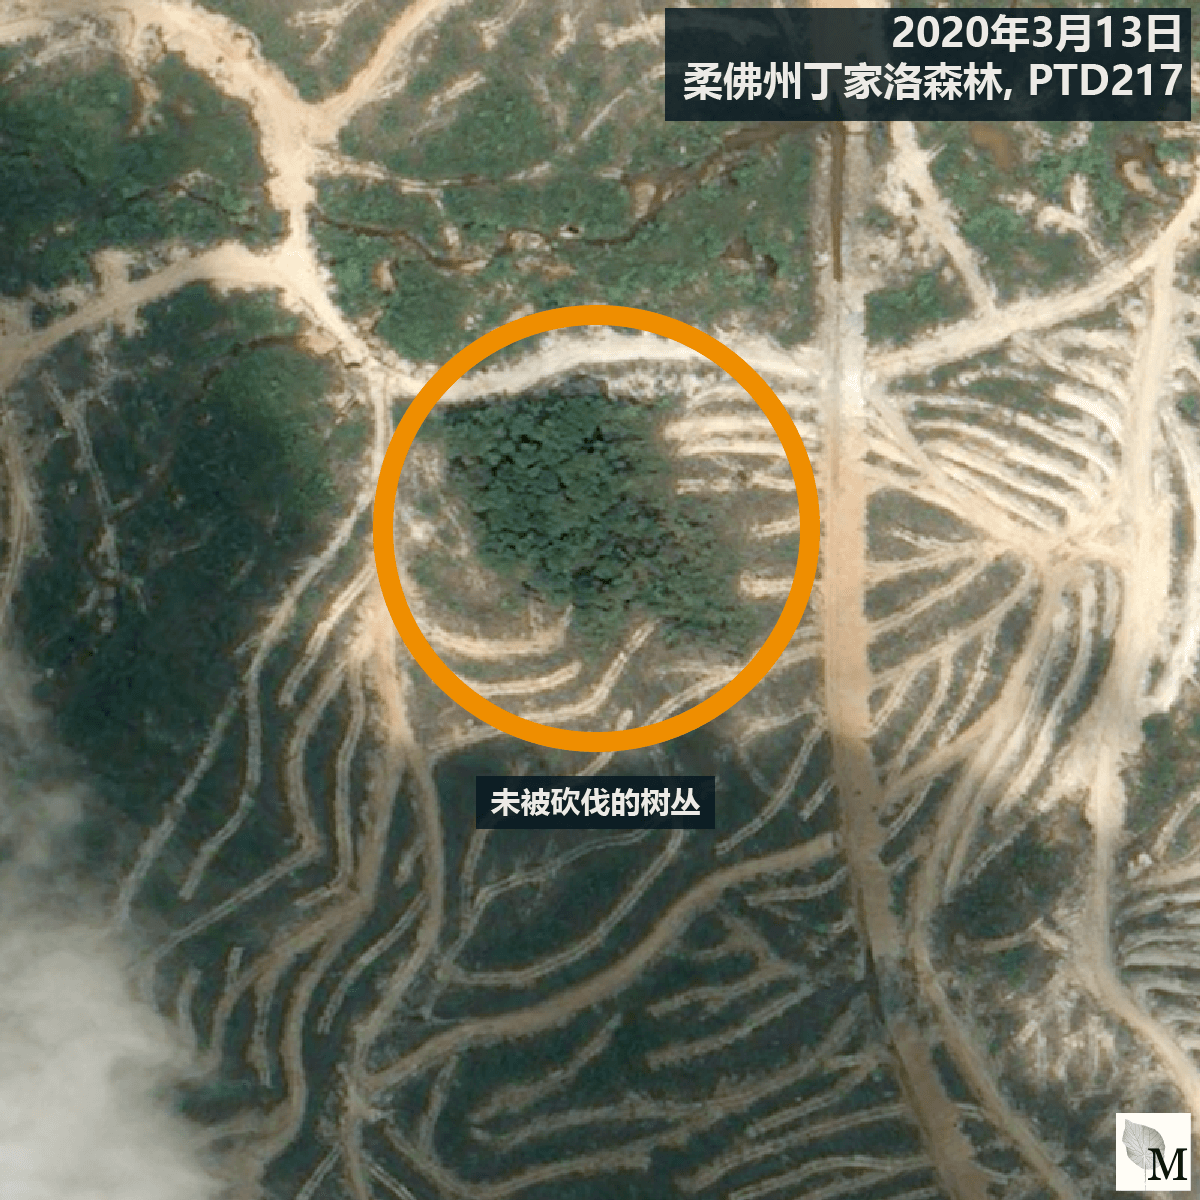 橙色圆圈显示着据报是濒临灭绝的盾状娑罗双树所在位置。（卫星图像 ©CNES 2016 Distribution Airbus DS / Earthrise）